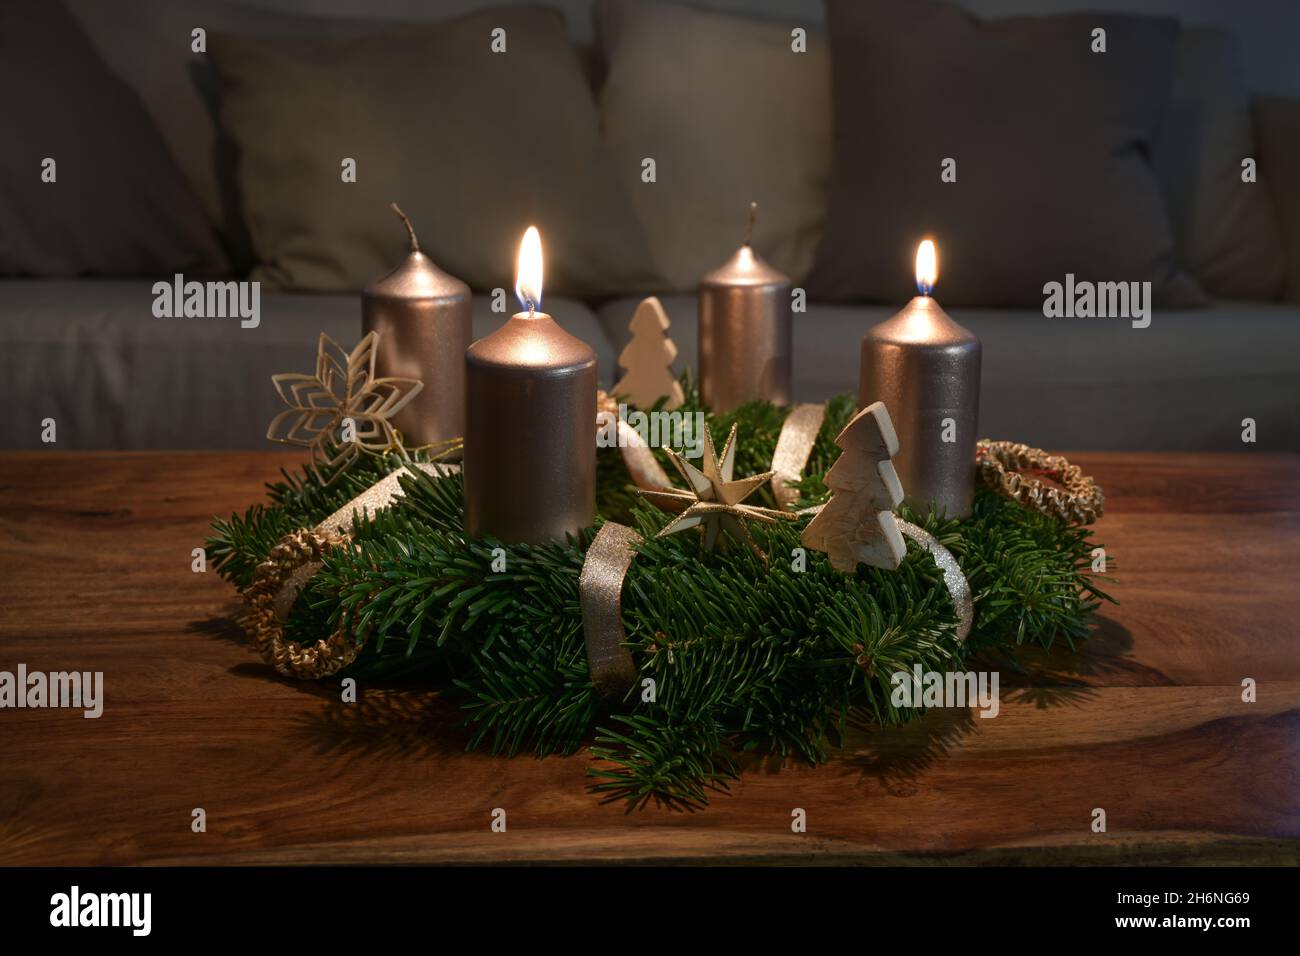 Zwei goldene Kerzen werden für den zweiten Sonntag auf einem Adventskranz mit natürlicher Weihnachtsdekoration auf einem hölzernen Couchtisch angezündet, Kopierfläche, ausgewählt f Stockfoto